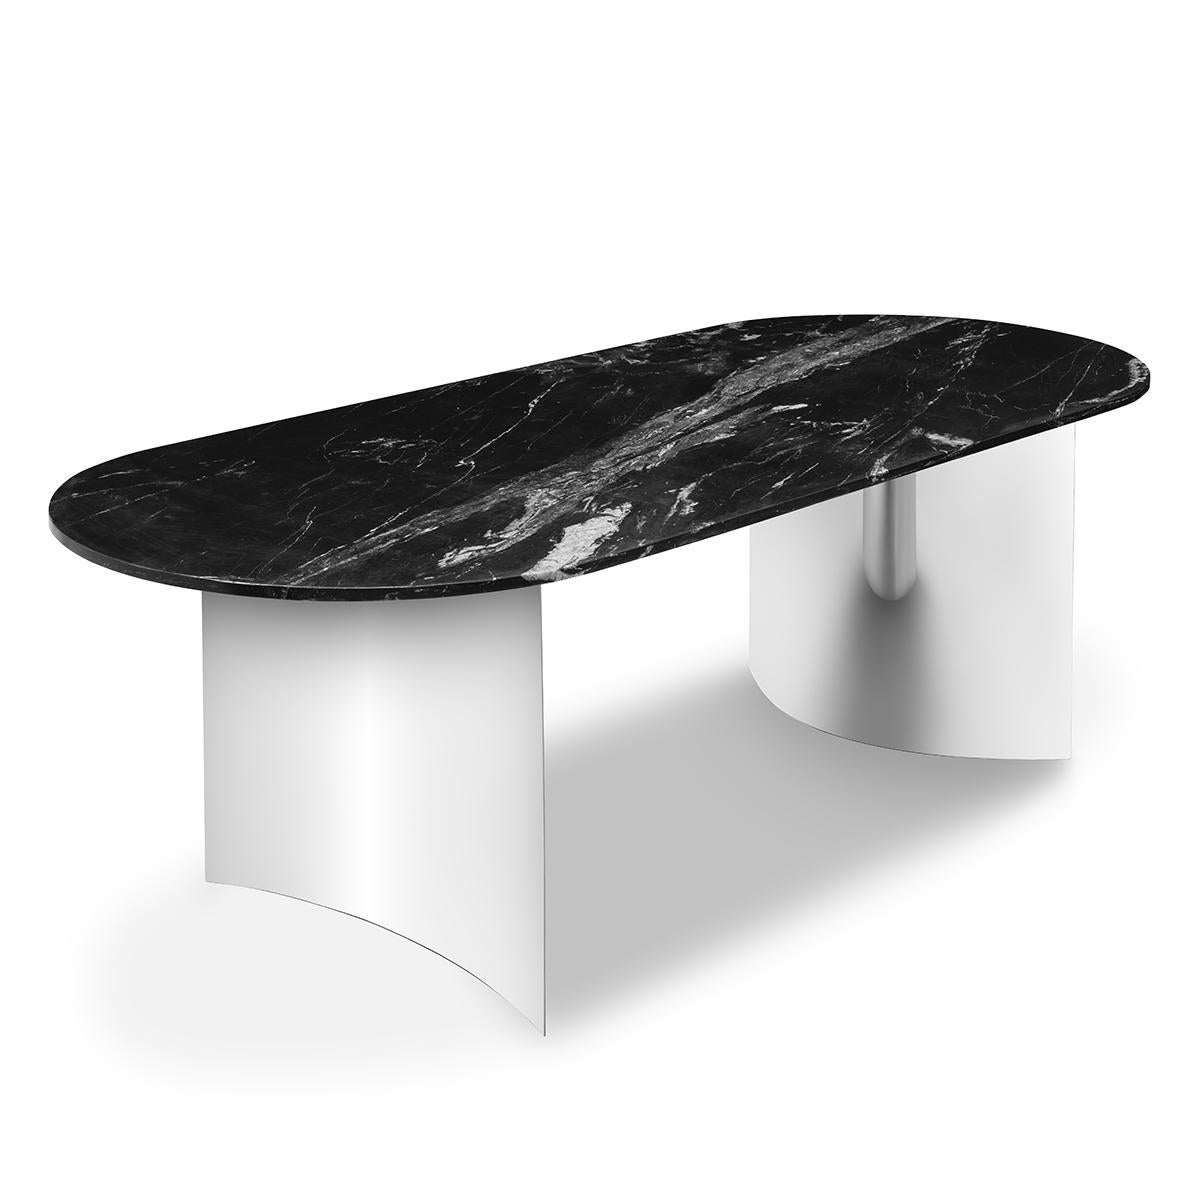 Tisch Orcante mit verchromten Füßen
und mit schwarzer Marmorplatte.